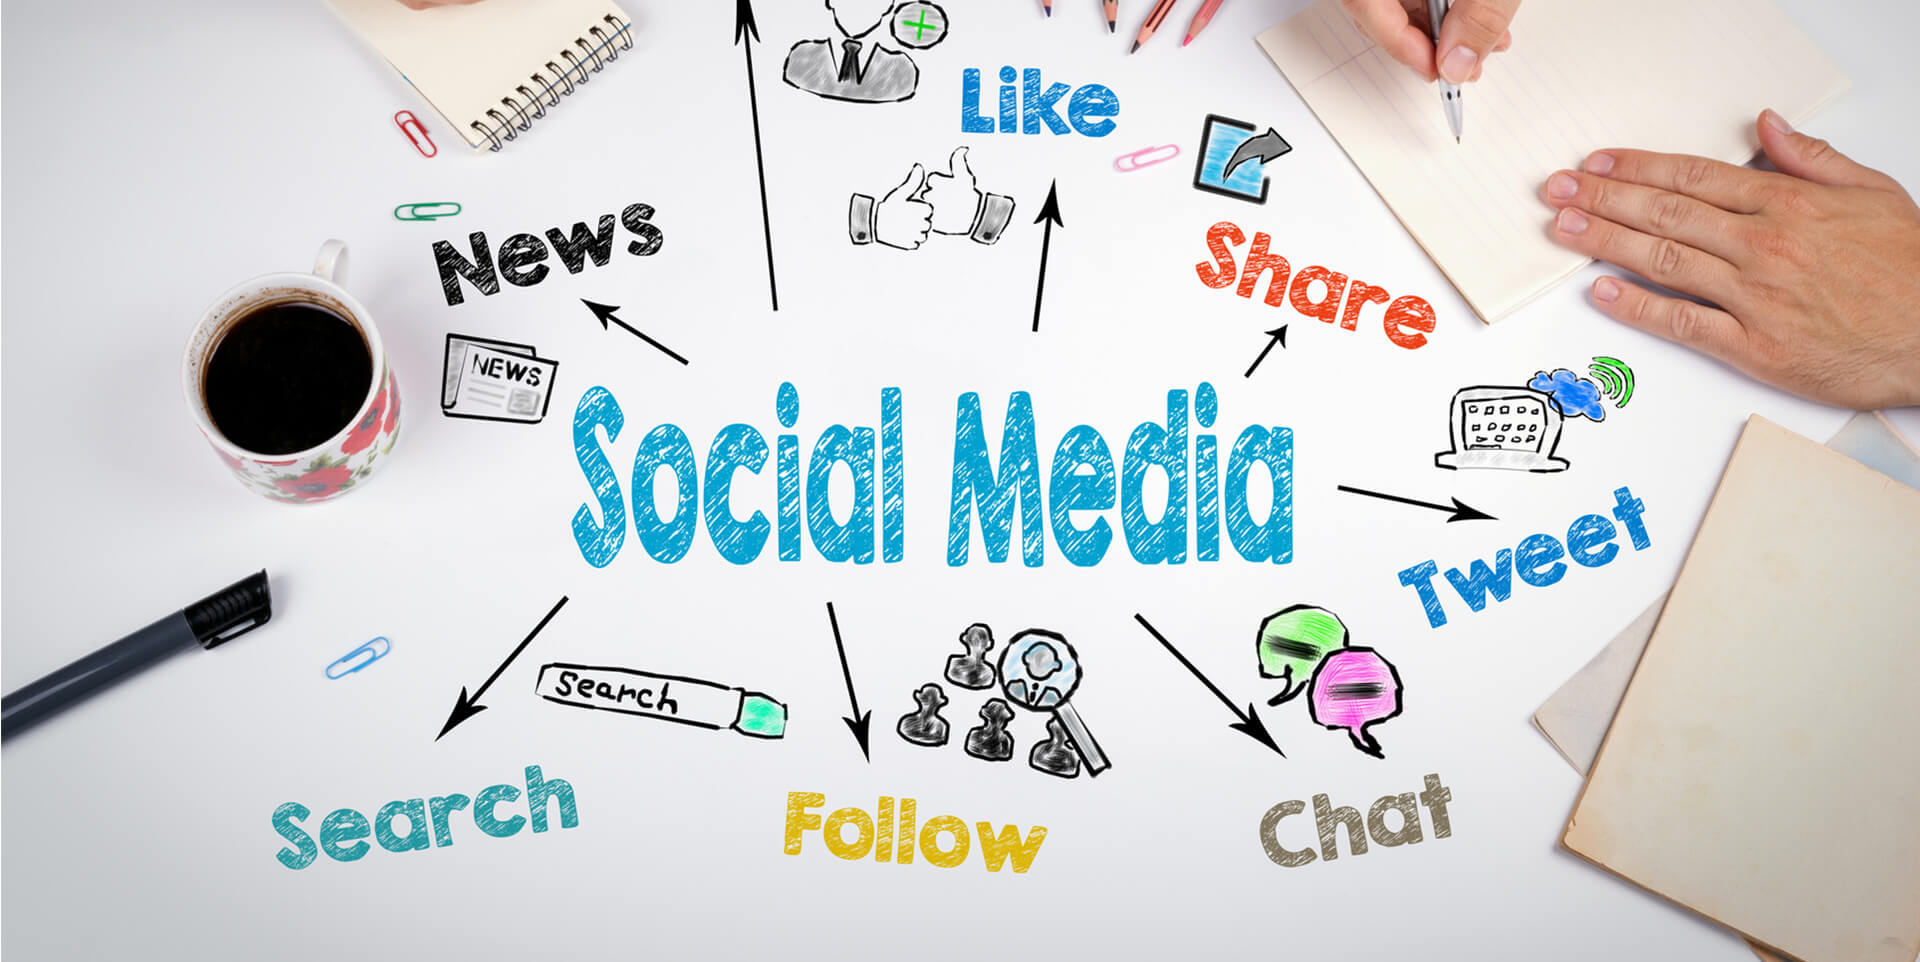 Social Media Marketing (SMM) Company Services Market'